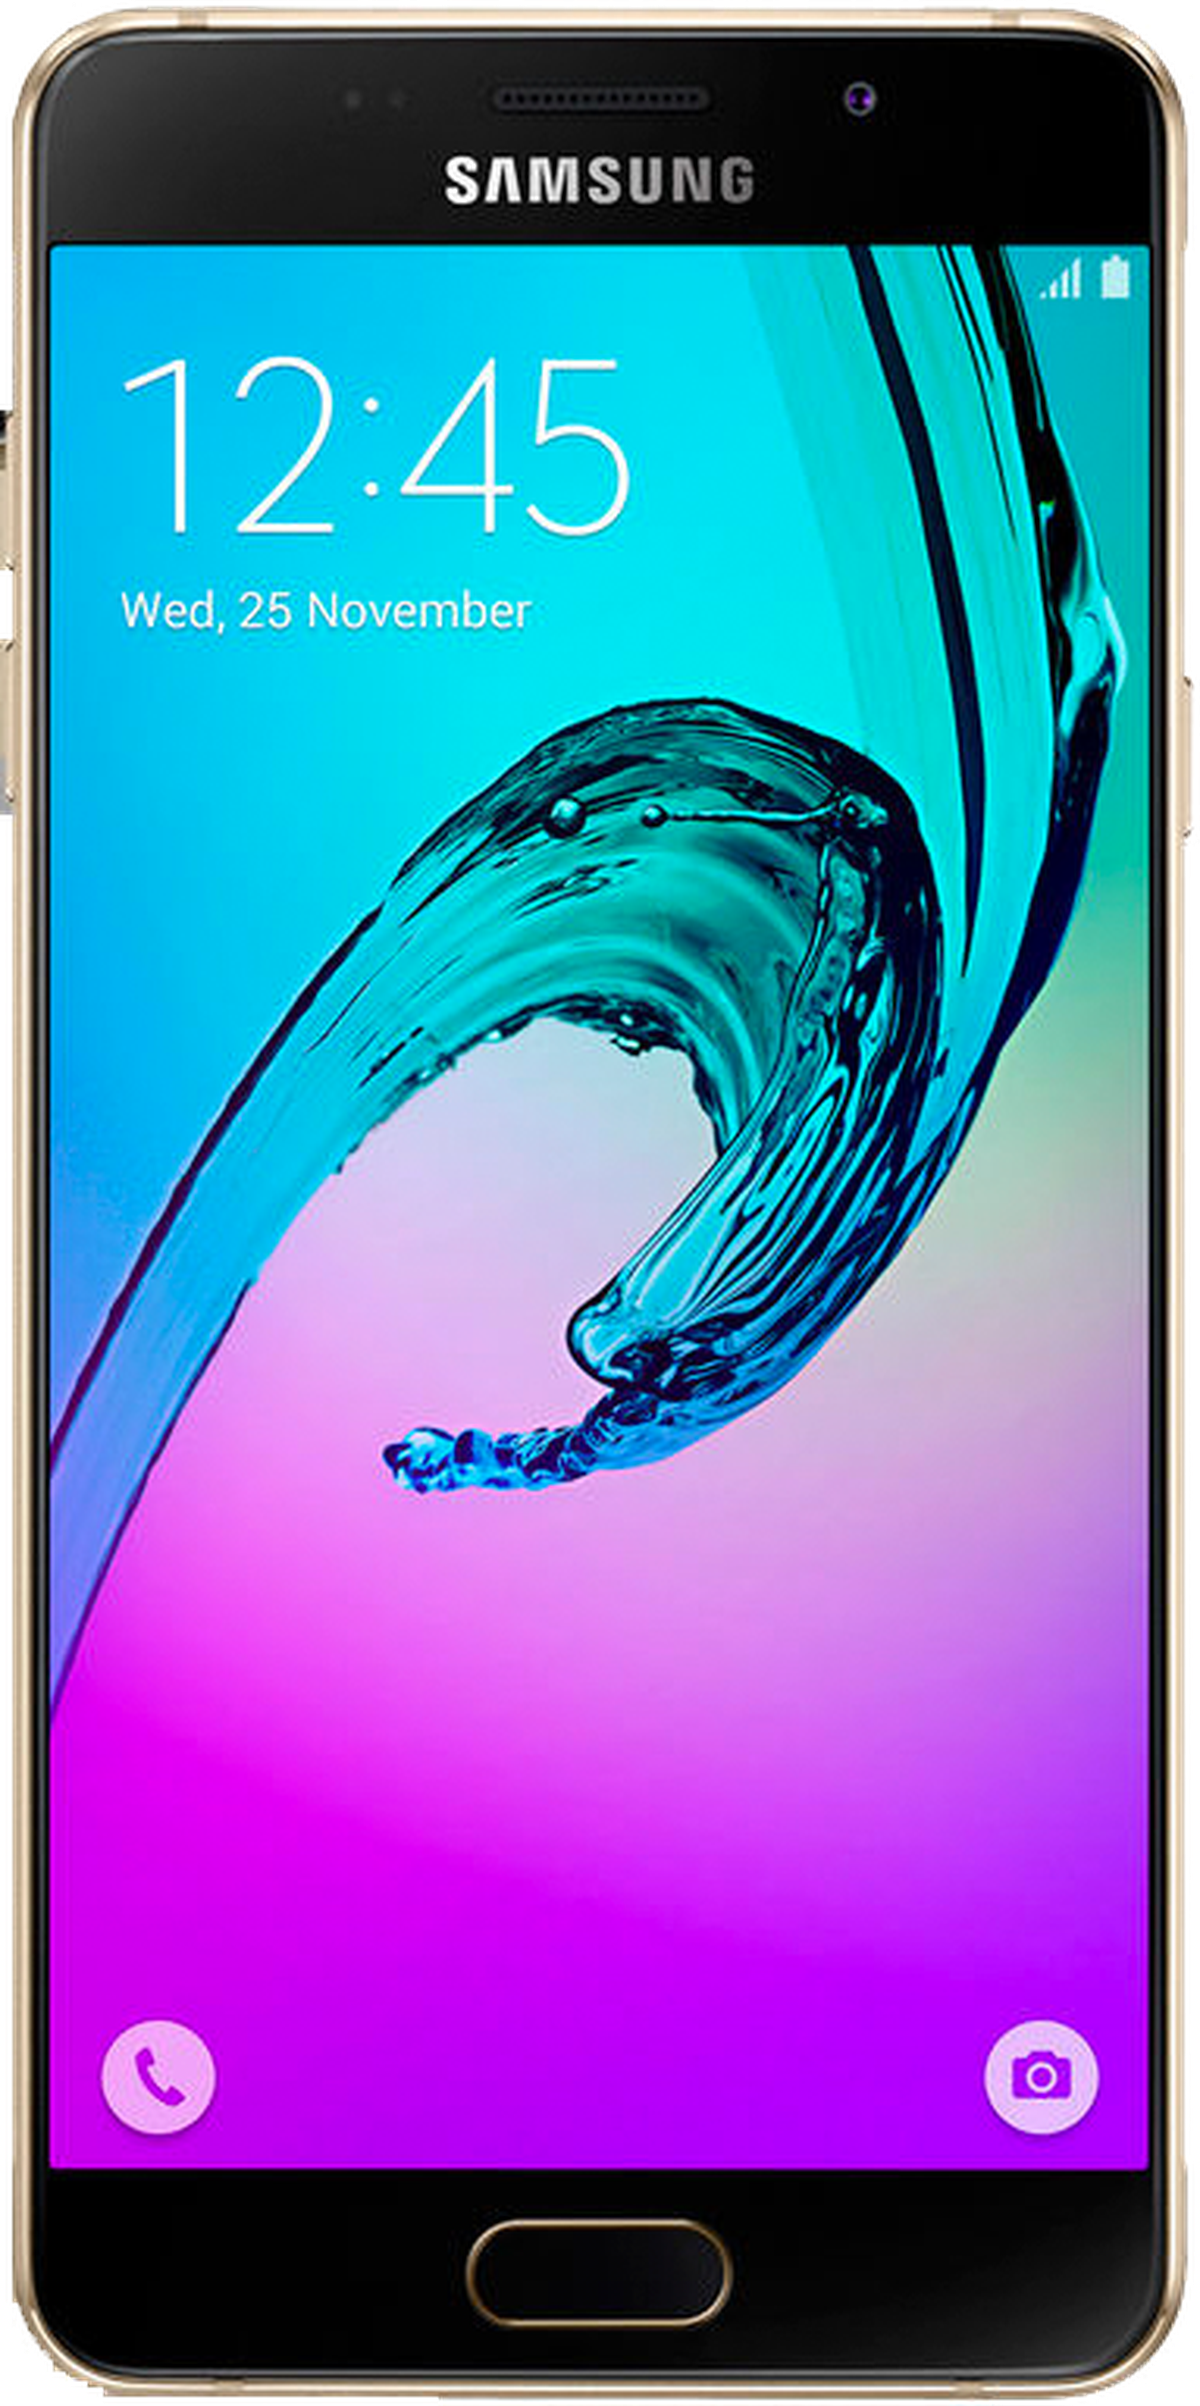 Samsung Galaxy A9 Pro: características y valoraciones | Computer Hoy